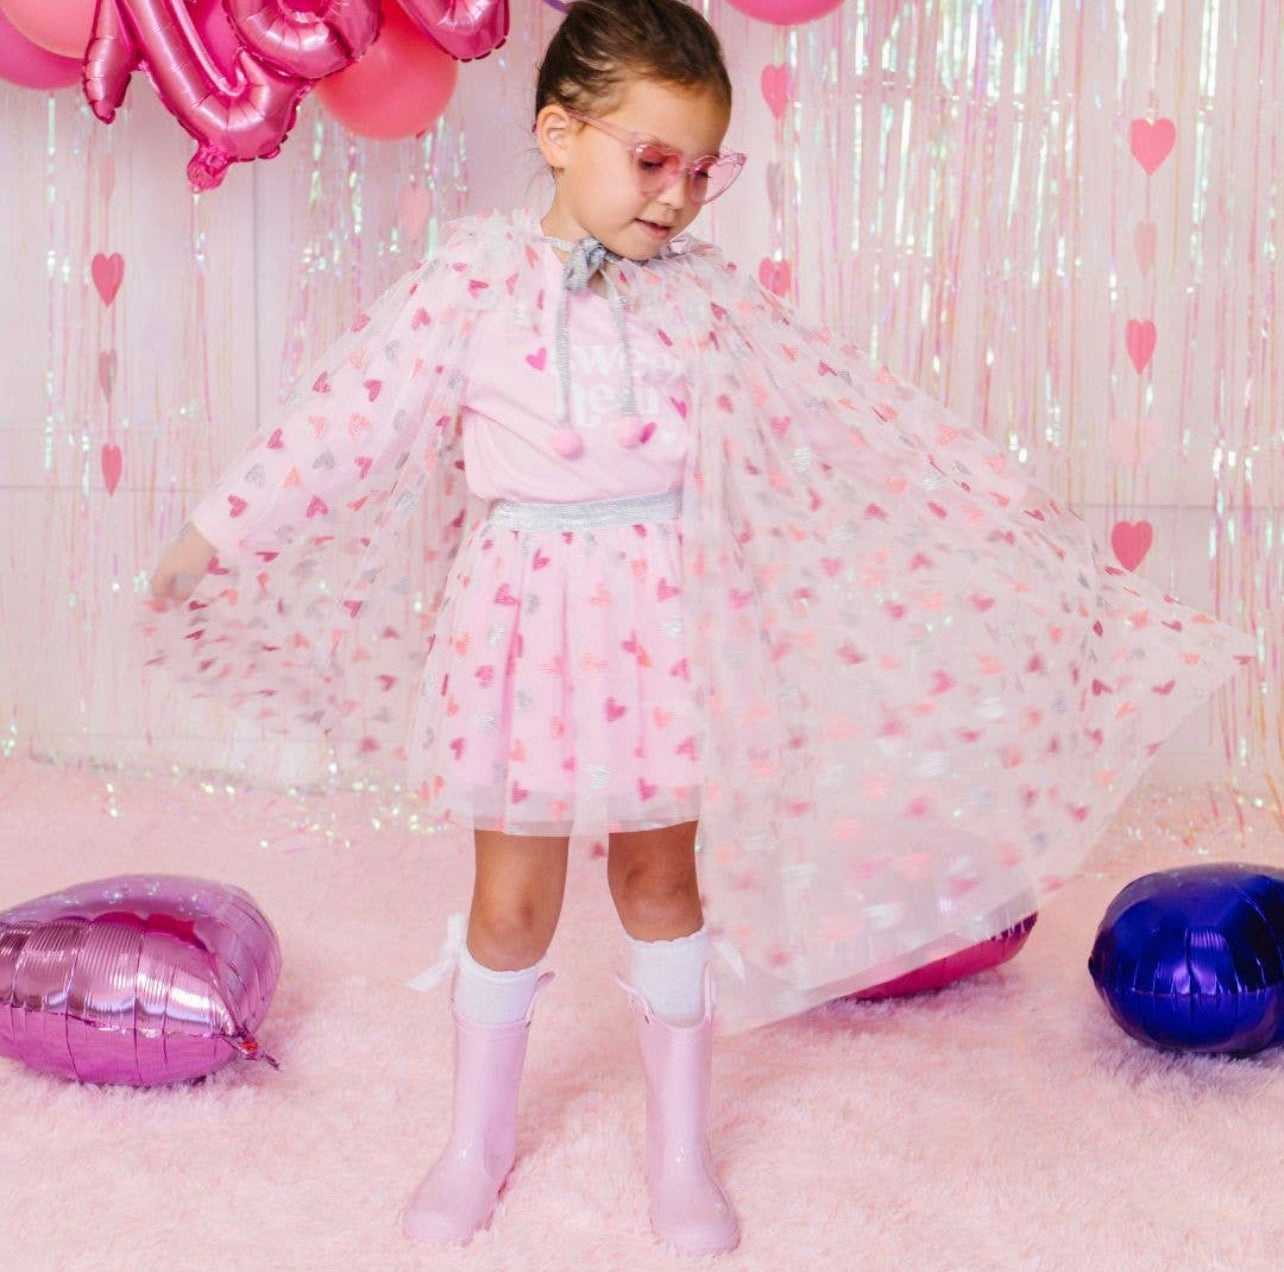 Glitter Heart Tutu - Dress Up Skirt - Kids Valentine's Day